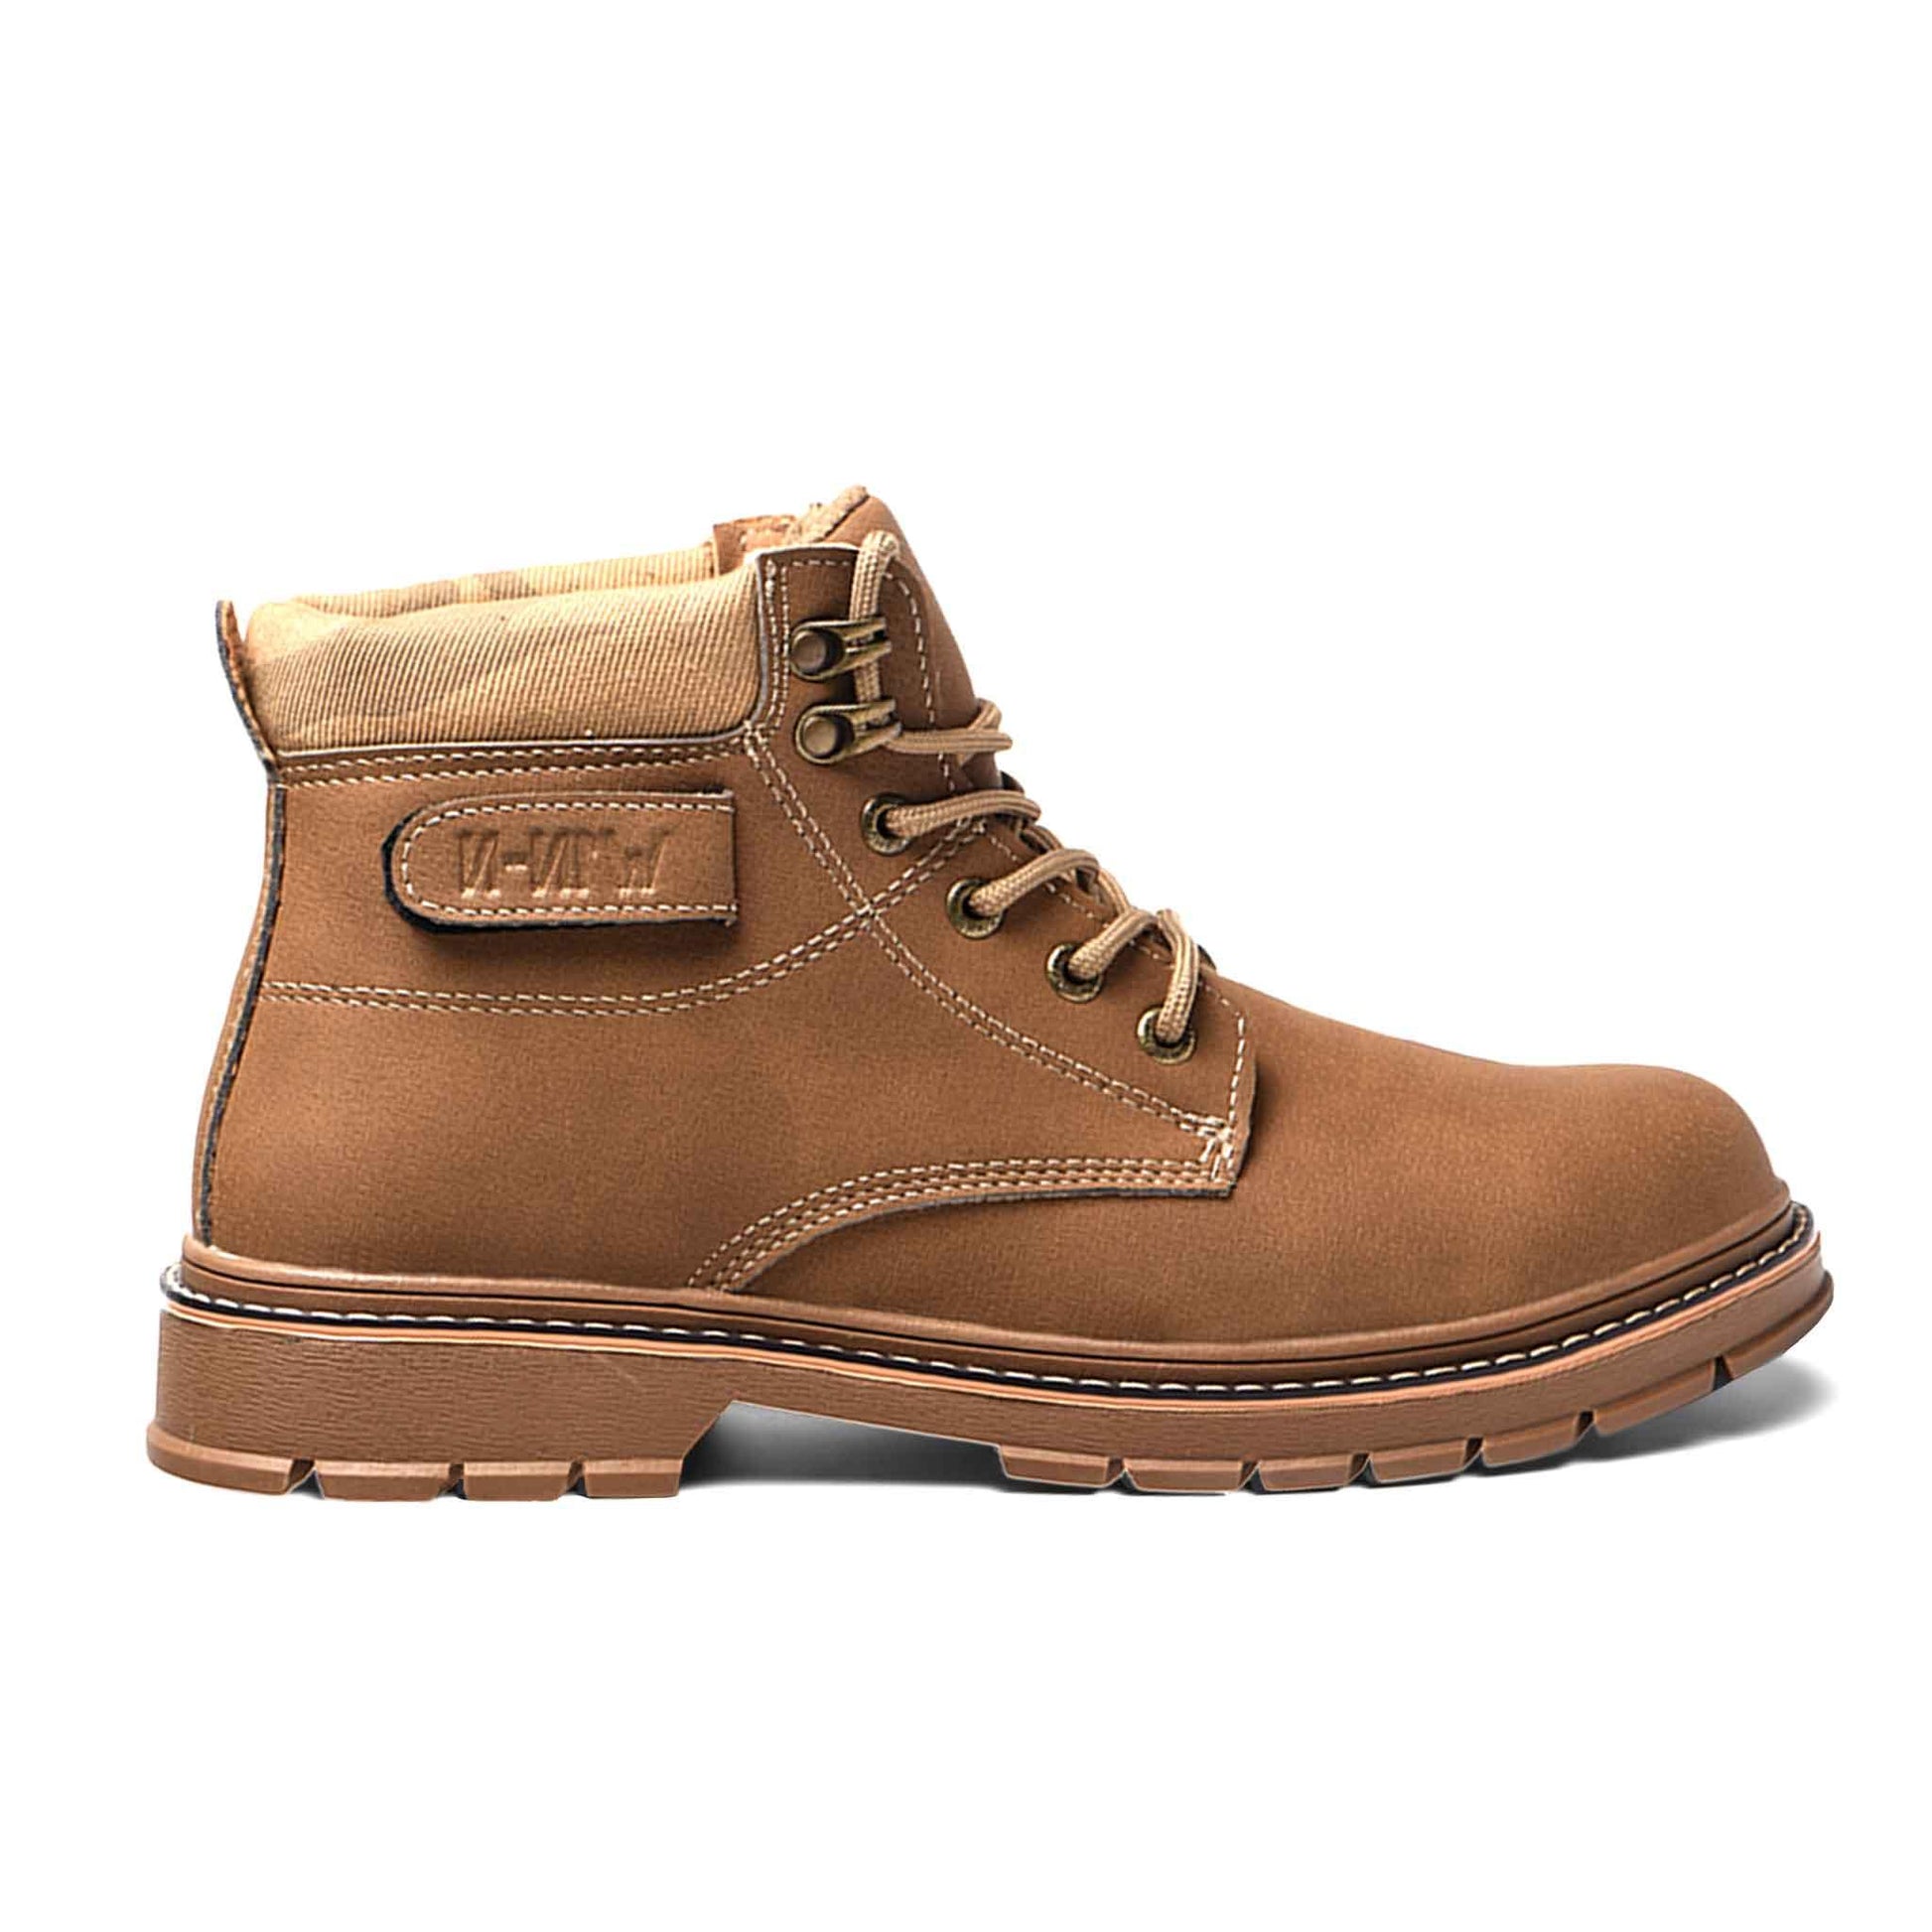 Men's Steel Toe Boots - Slip Resistant | B179 - USINE PRO Footwear